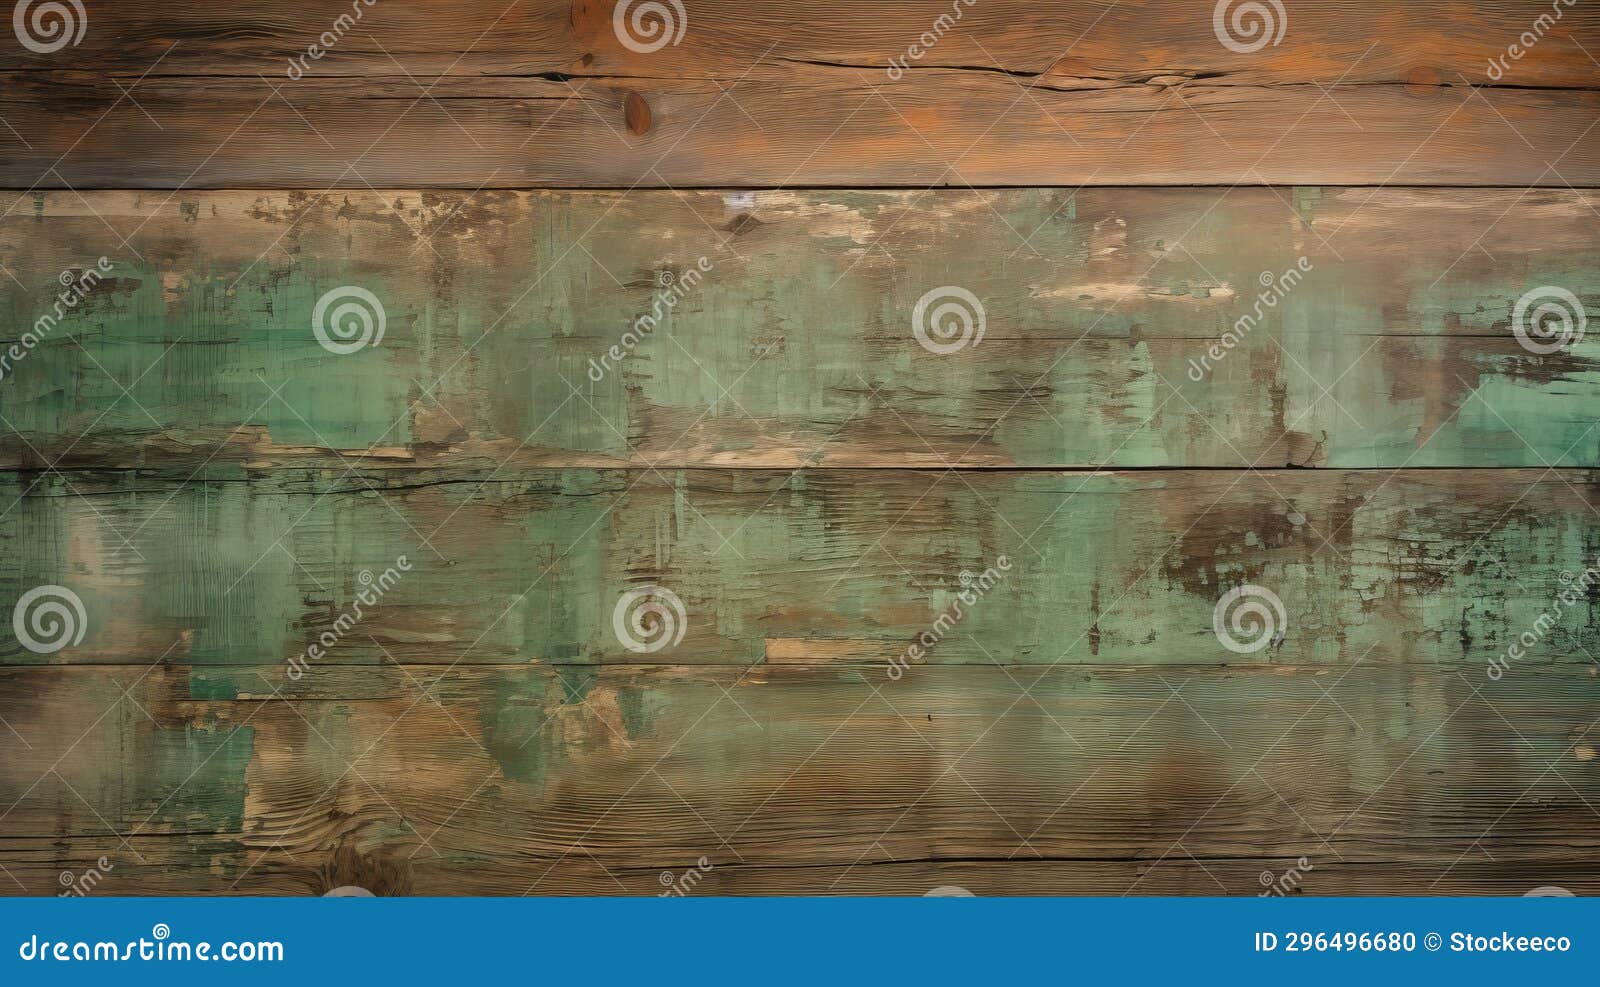 Wood Wall Rustic